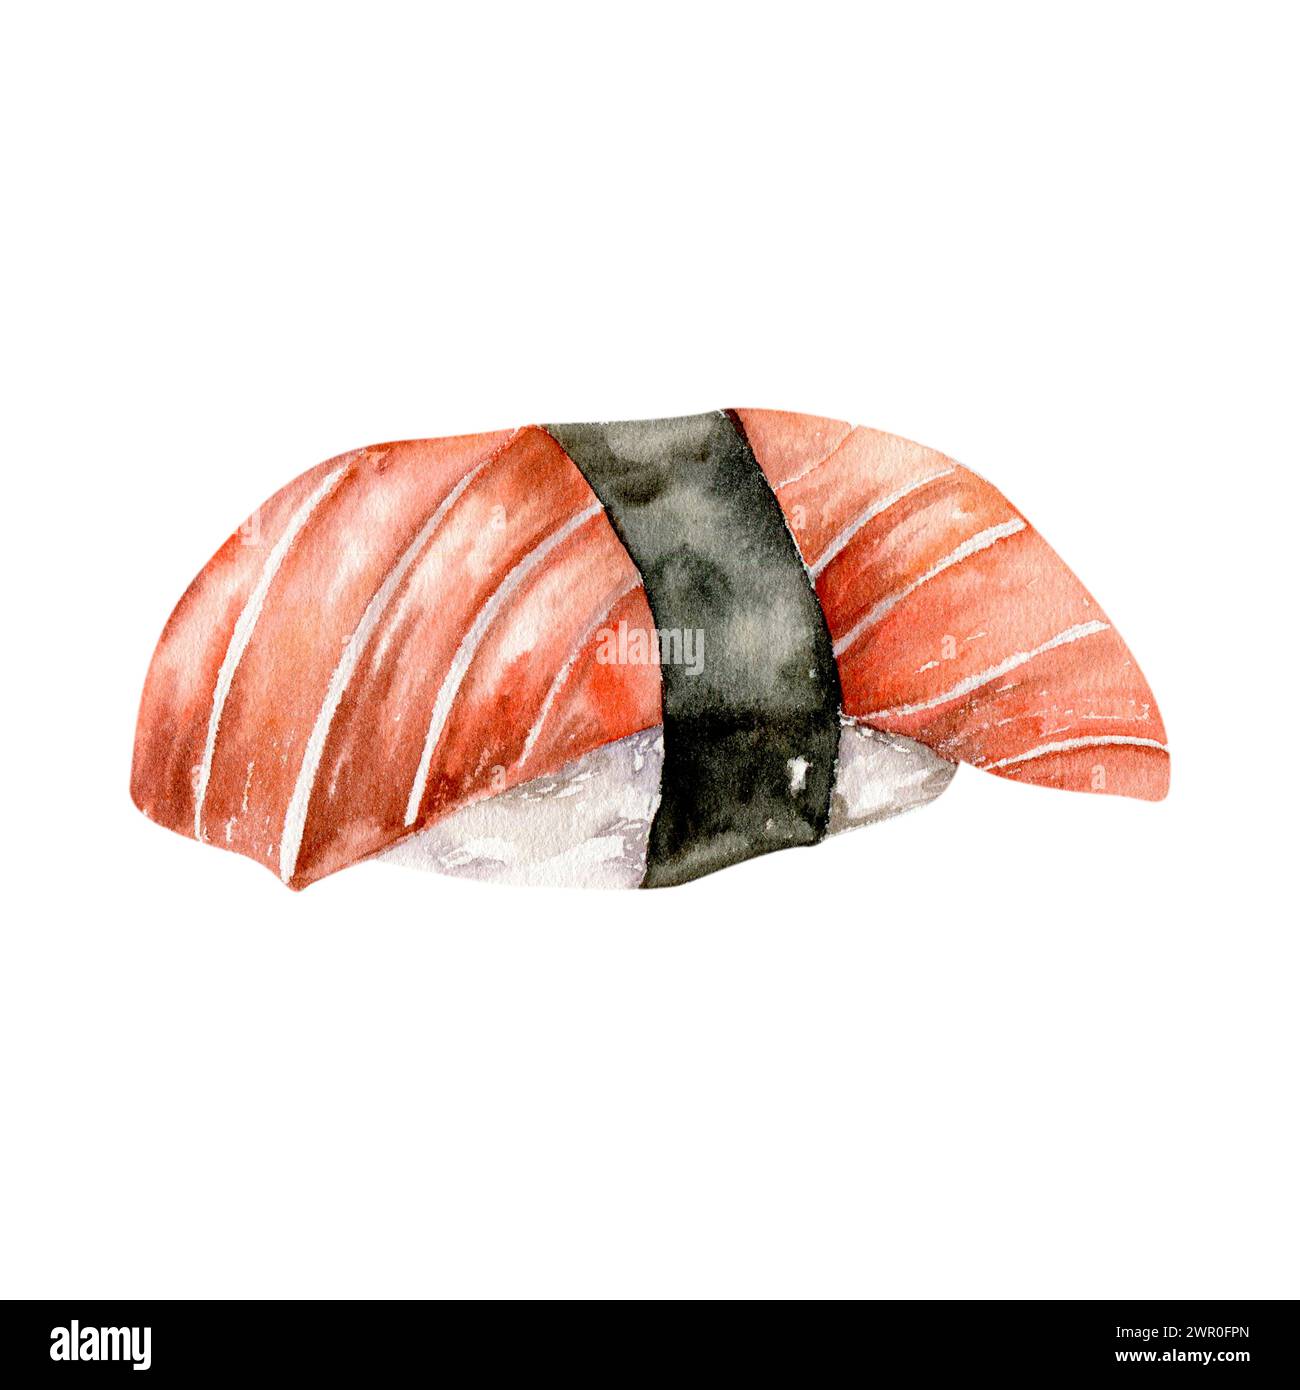 Aquarelle sashimi traditionnel japonais avec illustration de saumon. Fruits de mer pour restaurant, bar, café, conception de menu. Banque D'Images